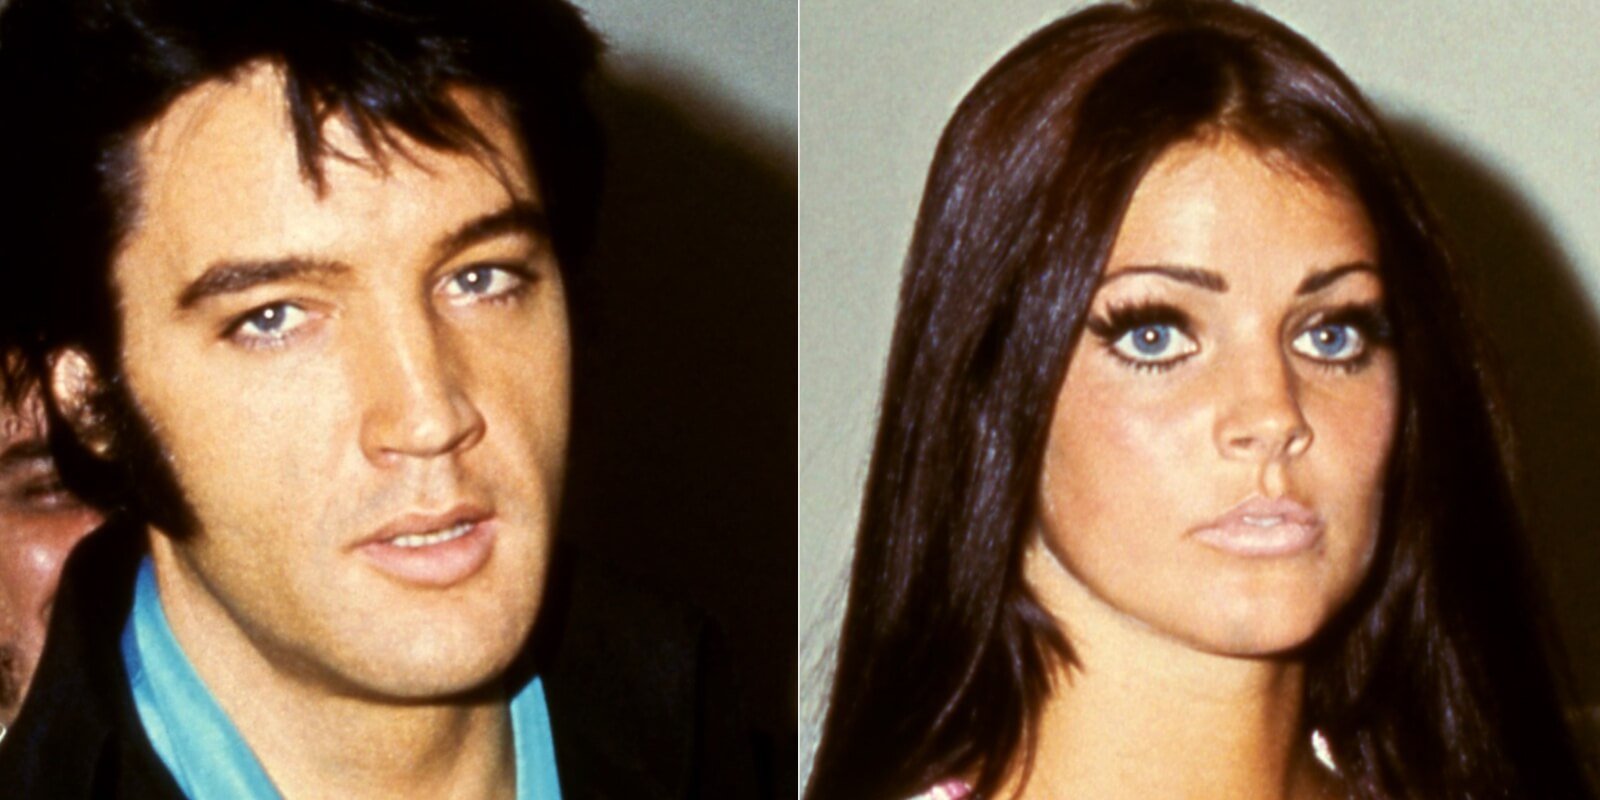 Elvis Presley and Priscilla Presley photographed in 1970.